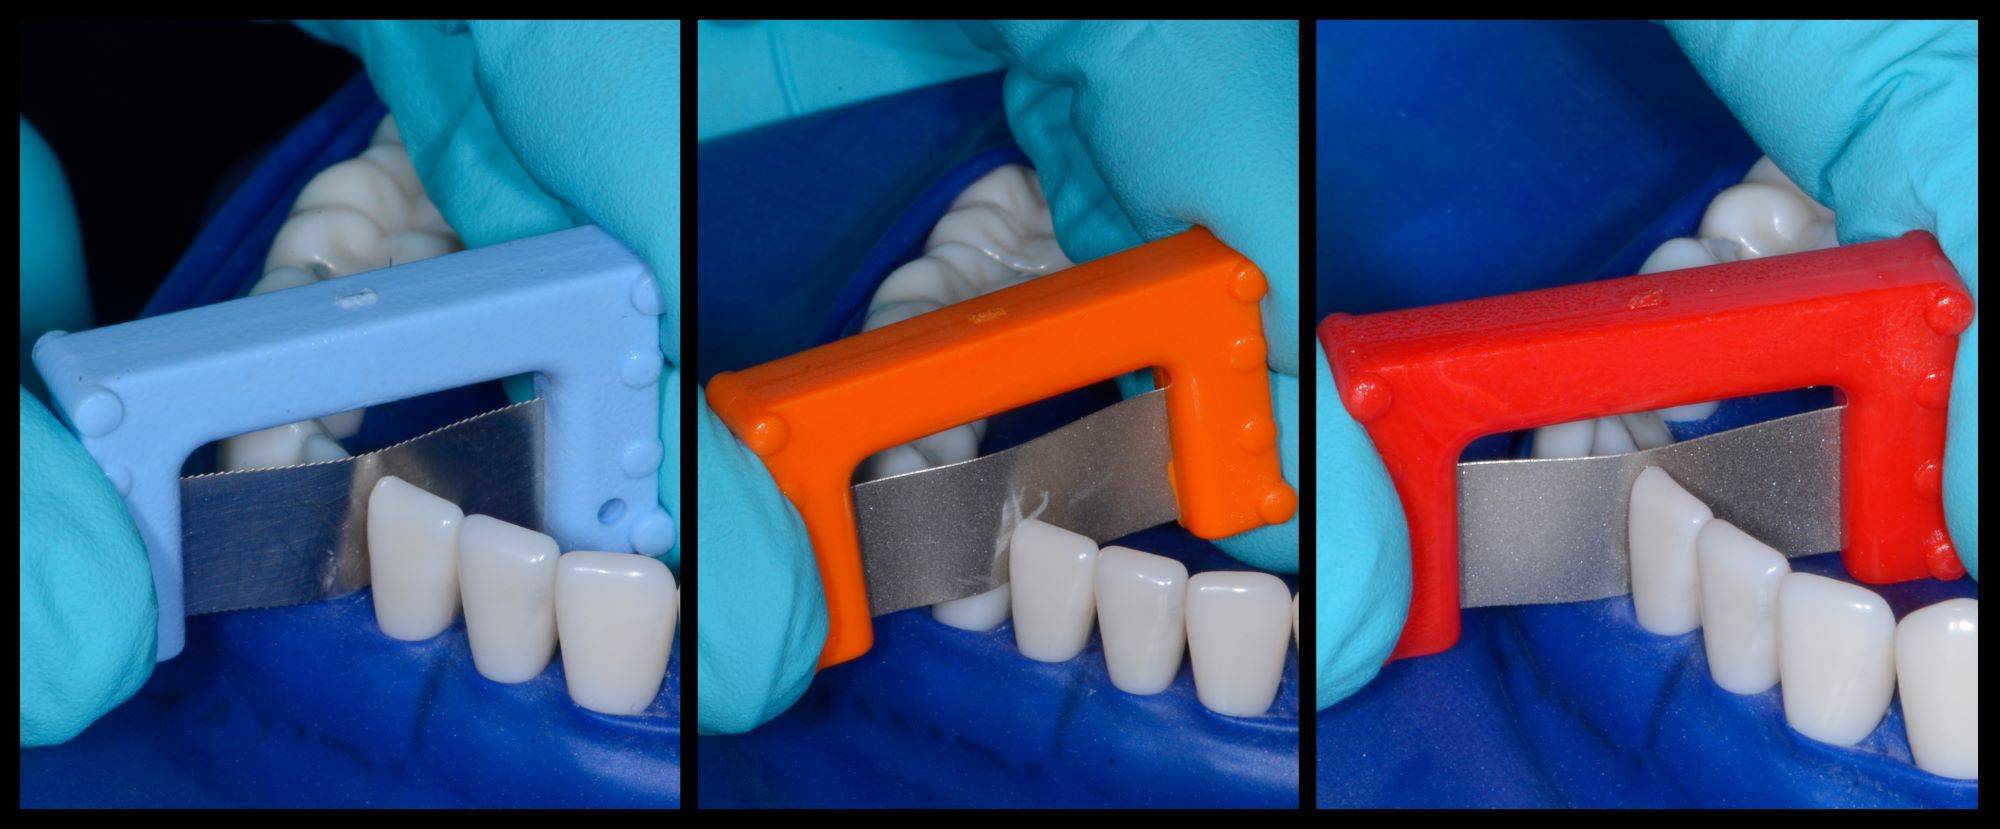 3 images showcasing sanding of teeth